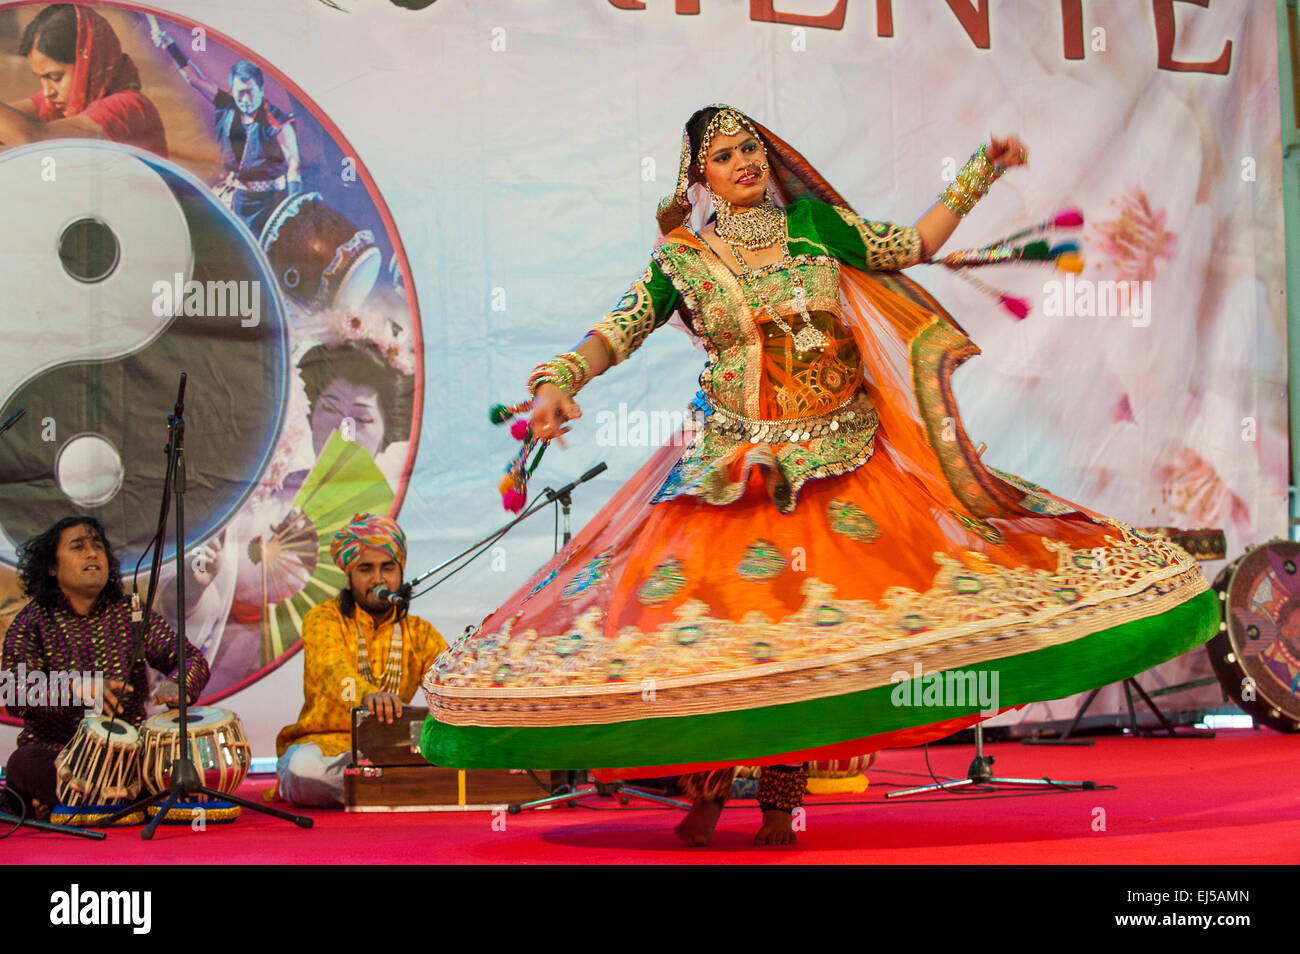 Turín, Italia. 20 de marzo de 2015. Feria de Lingotto 'Festival dell'Oriente' desde el 20 hasta el 22 de marzo de 2015 y del 27 al 30 de marzo de 2015 - 20 de marzo de 2015 -la India Rajasthan Dhoad gitanos de Rajastán y danza Gumar Crédito: Realmente fácil Star/Alamy Live News Foto de stock